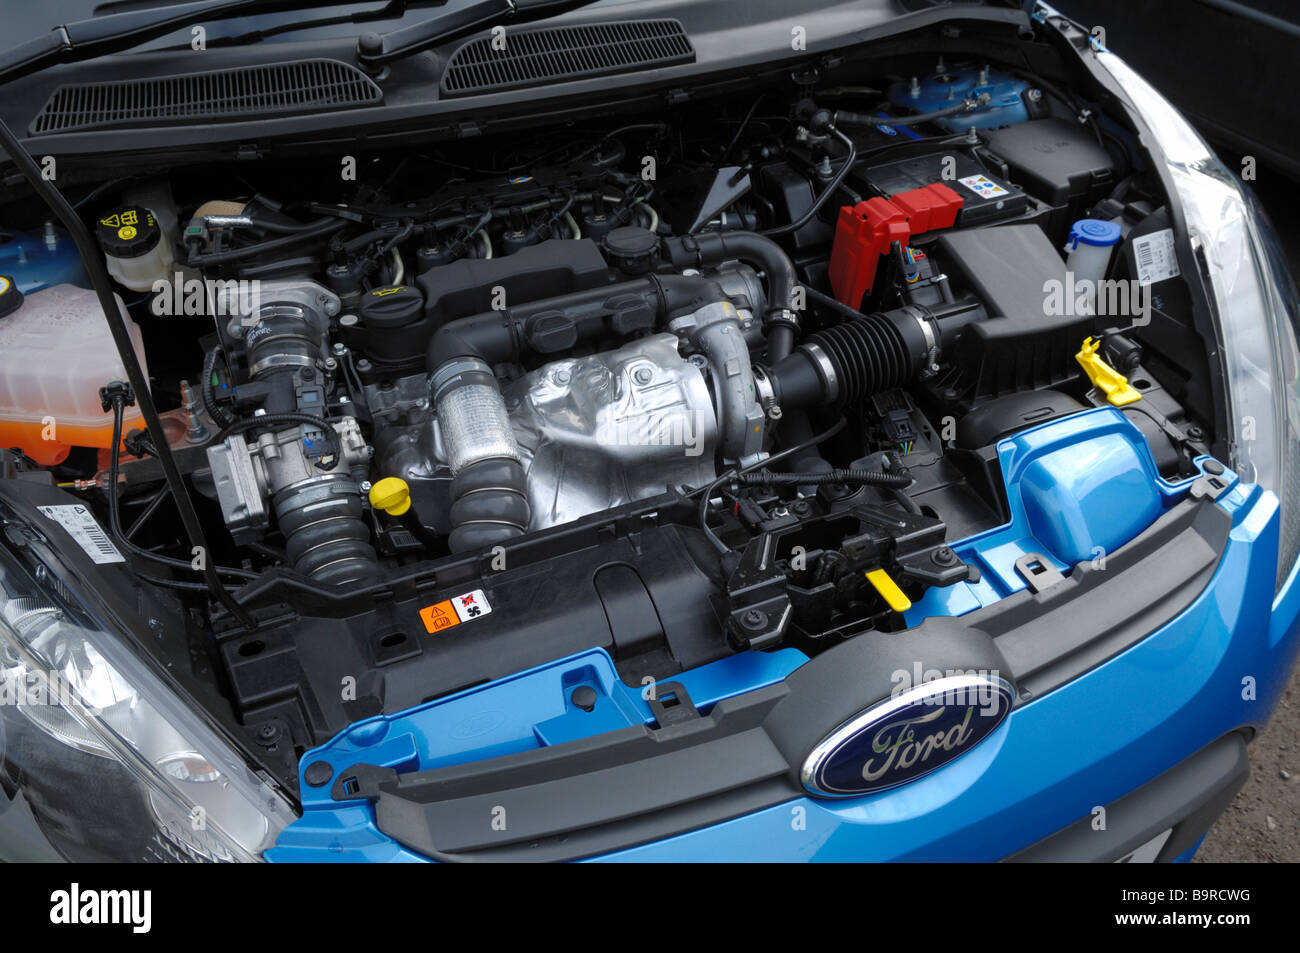 Le moteur diesel de la Ford Fiesta 1.6 TDCi ECOnetic, une des voitures les plus écologiques disponibles en Europe à son lancement en 2009, la production de seulement 98g/km de CO2 avec une consommation de carburant combinée de 3,7 l/100km (76.3mpg). Banque D'Images